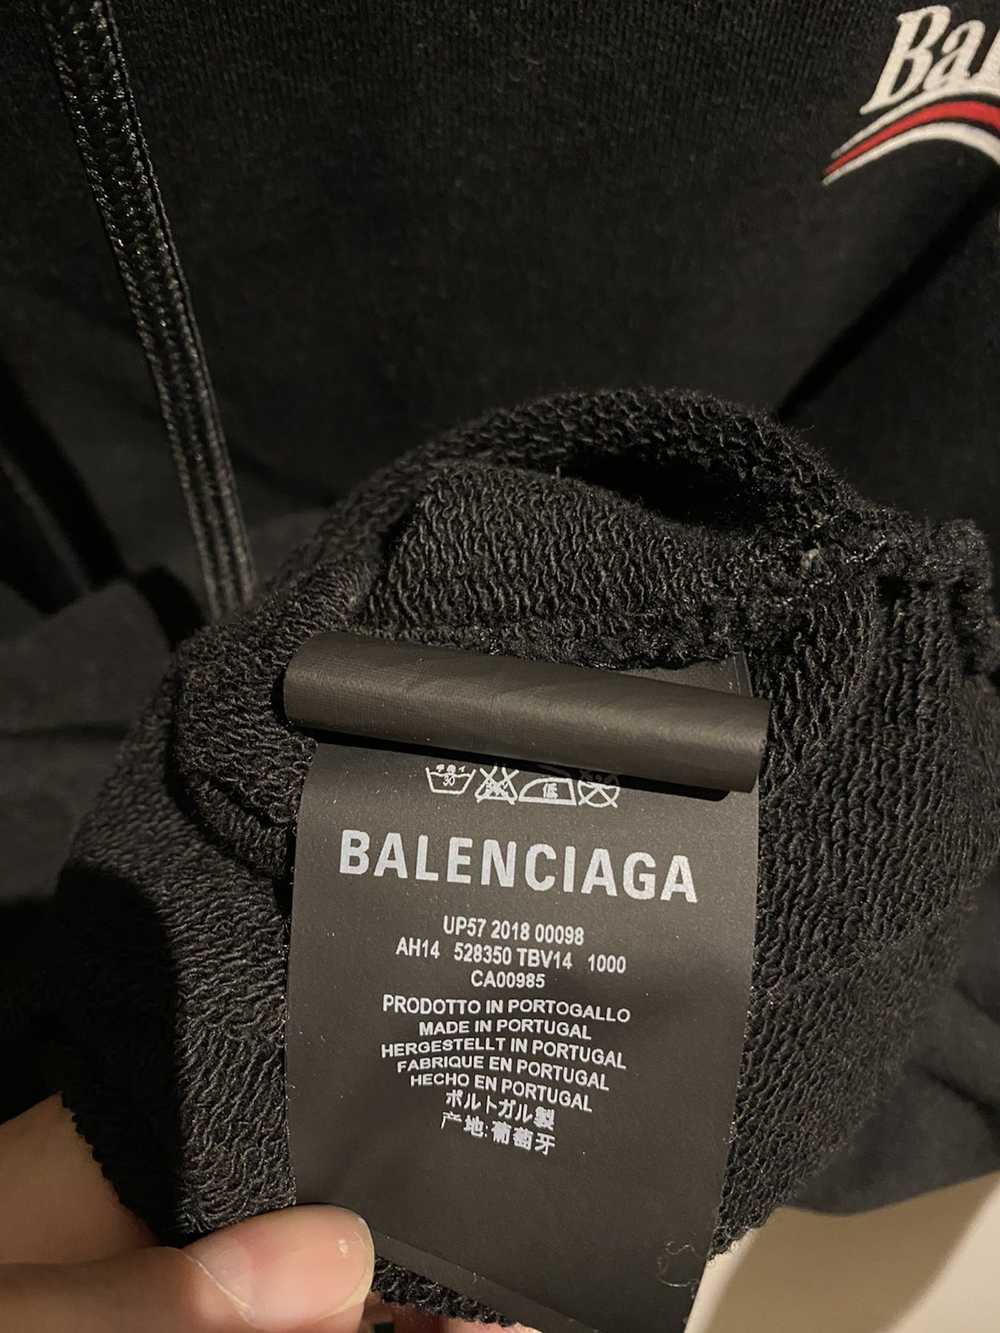 Balenciaga Balenciaga Campaign Hoodie 2017 - image 7